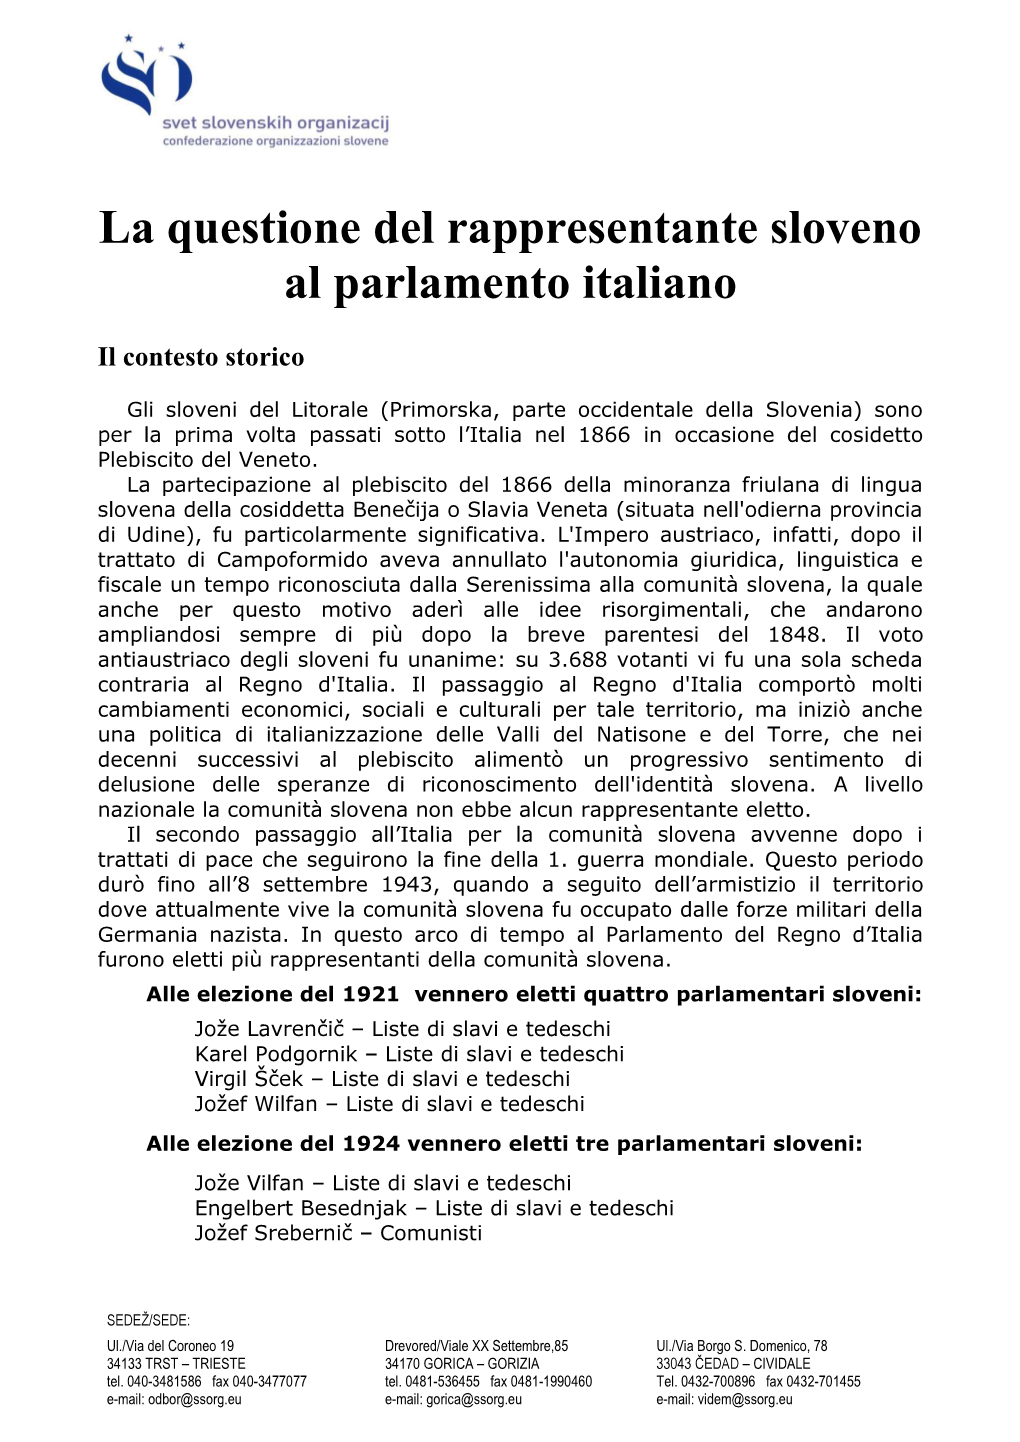 La Questione Del Rappresentante Sloveno Al Parlamento Italiano